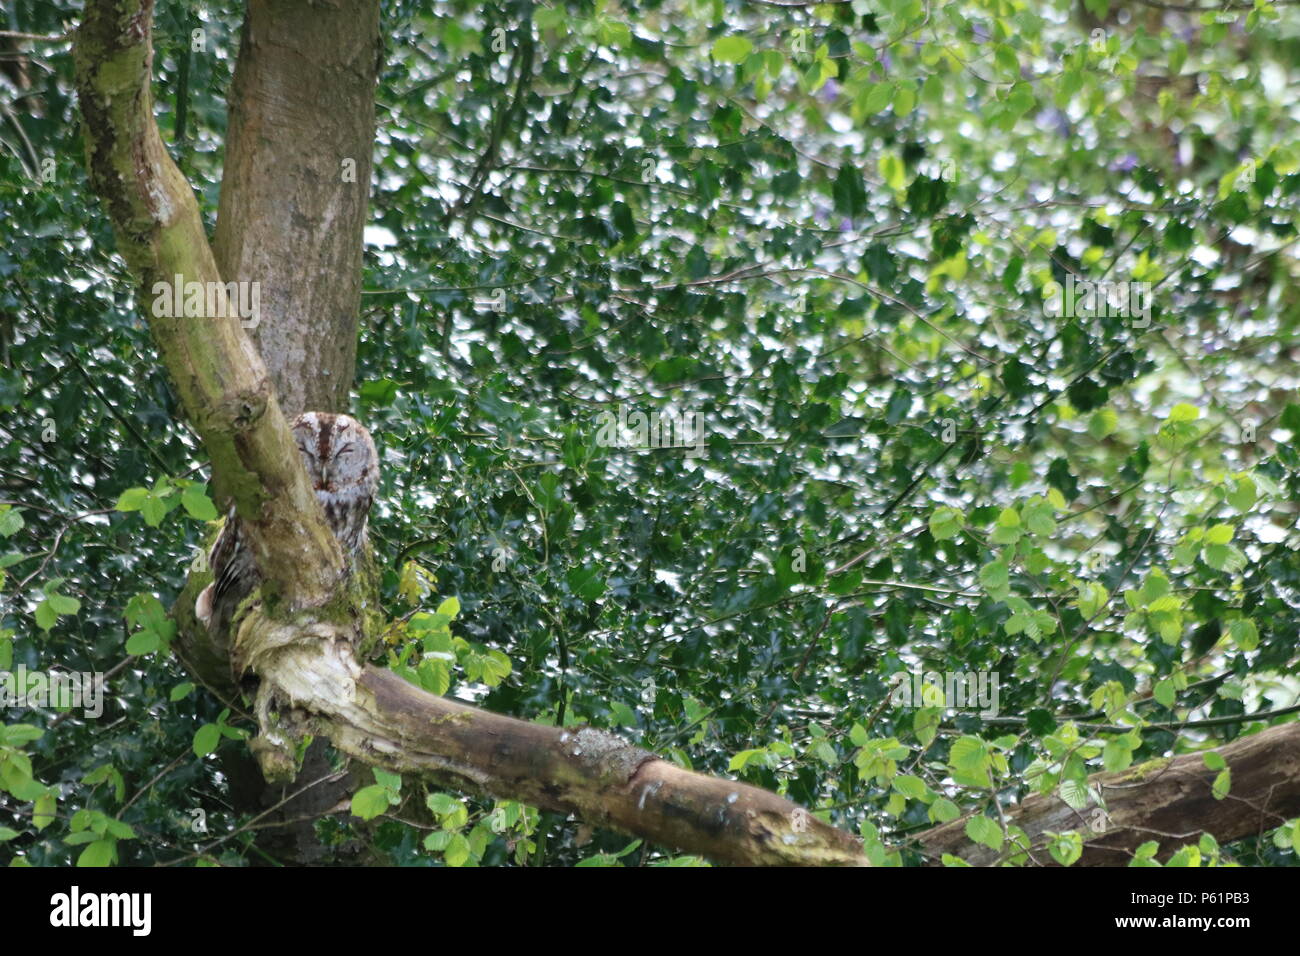 Waldkauz oder braune Eule (Strix aluco), der auf einem Baum gehockt, North West England, Vereinigtes Königreich. Stockfoto